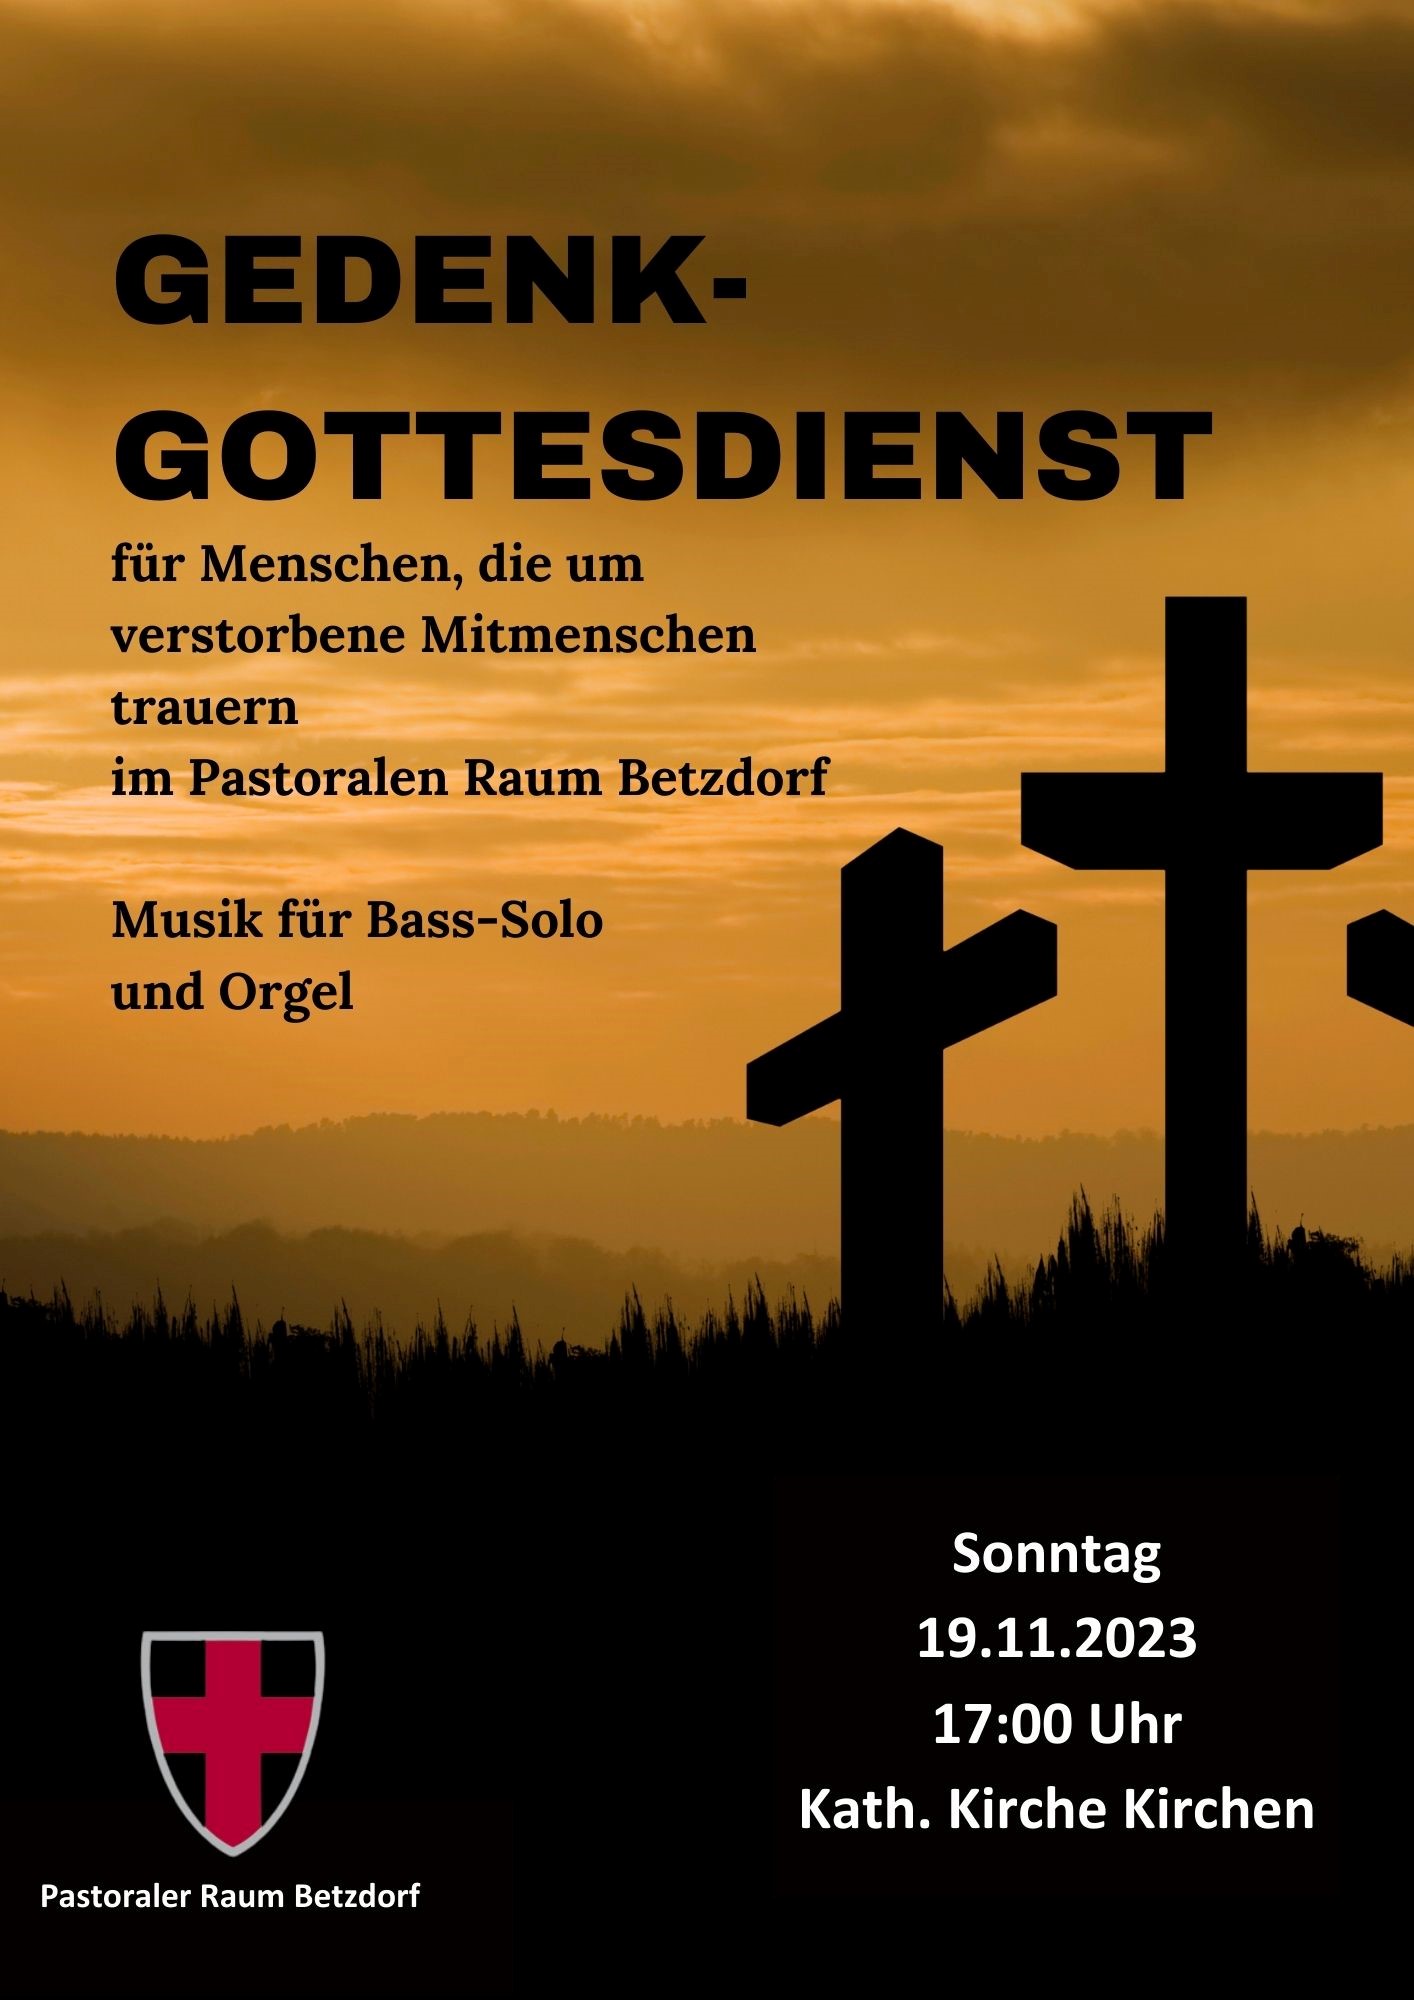 Gedenkgottesdienst für Menschen, die um verstorbene Mitmenschen trauern im Pastoralen Raum Betzdorf. Musik für Bass-Solo und Orgel